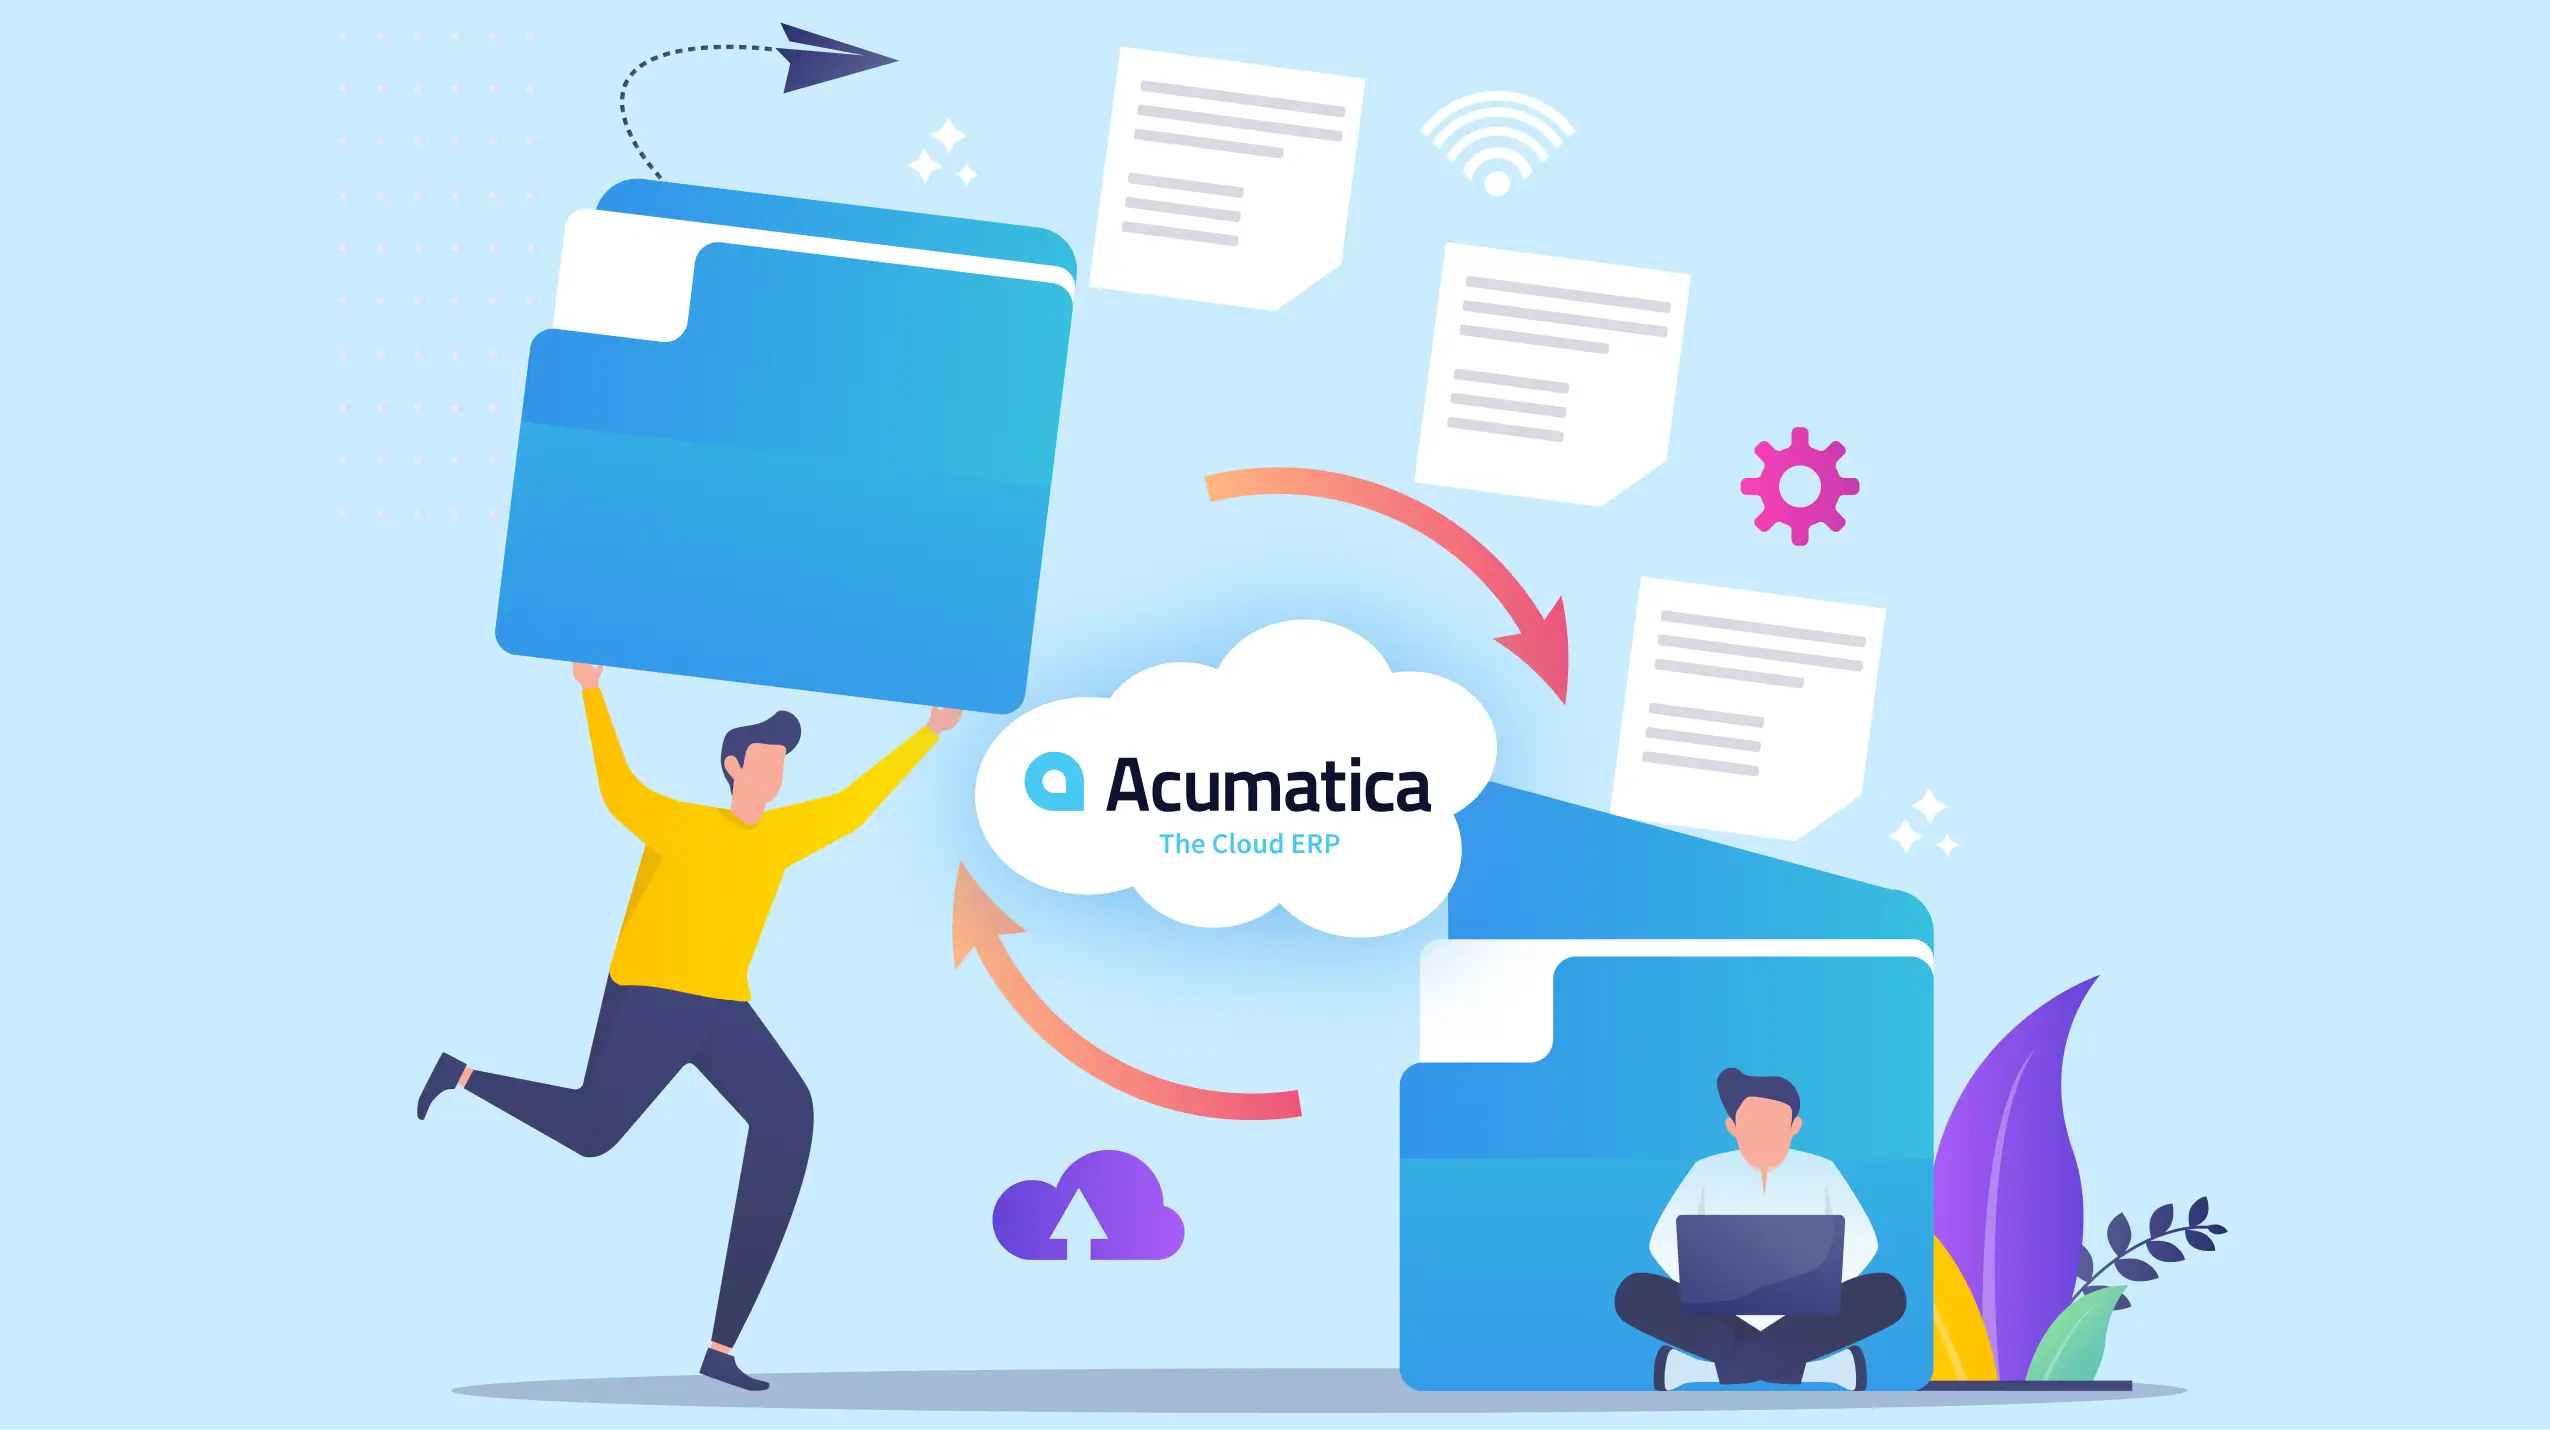 Acumatica ideal cloud ERP integration